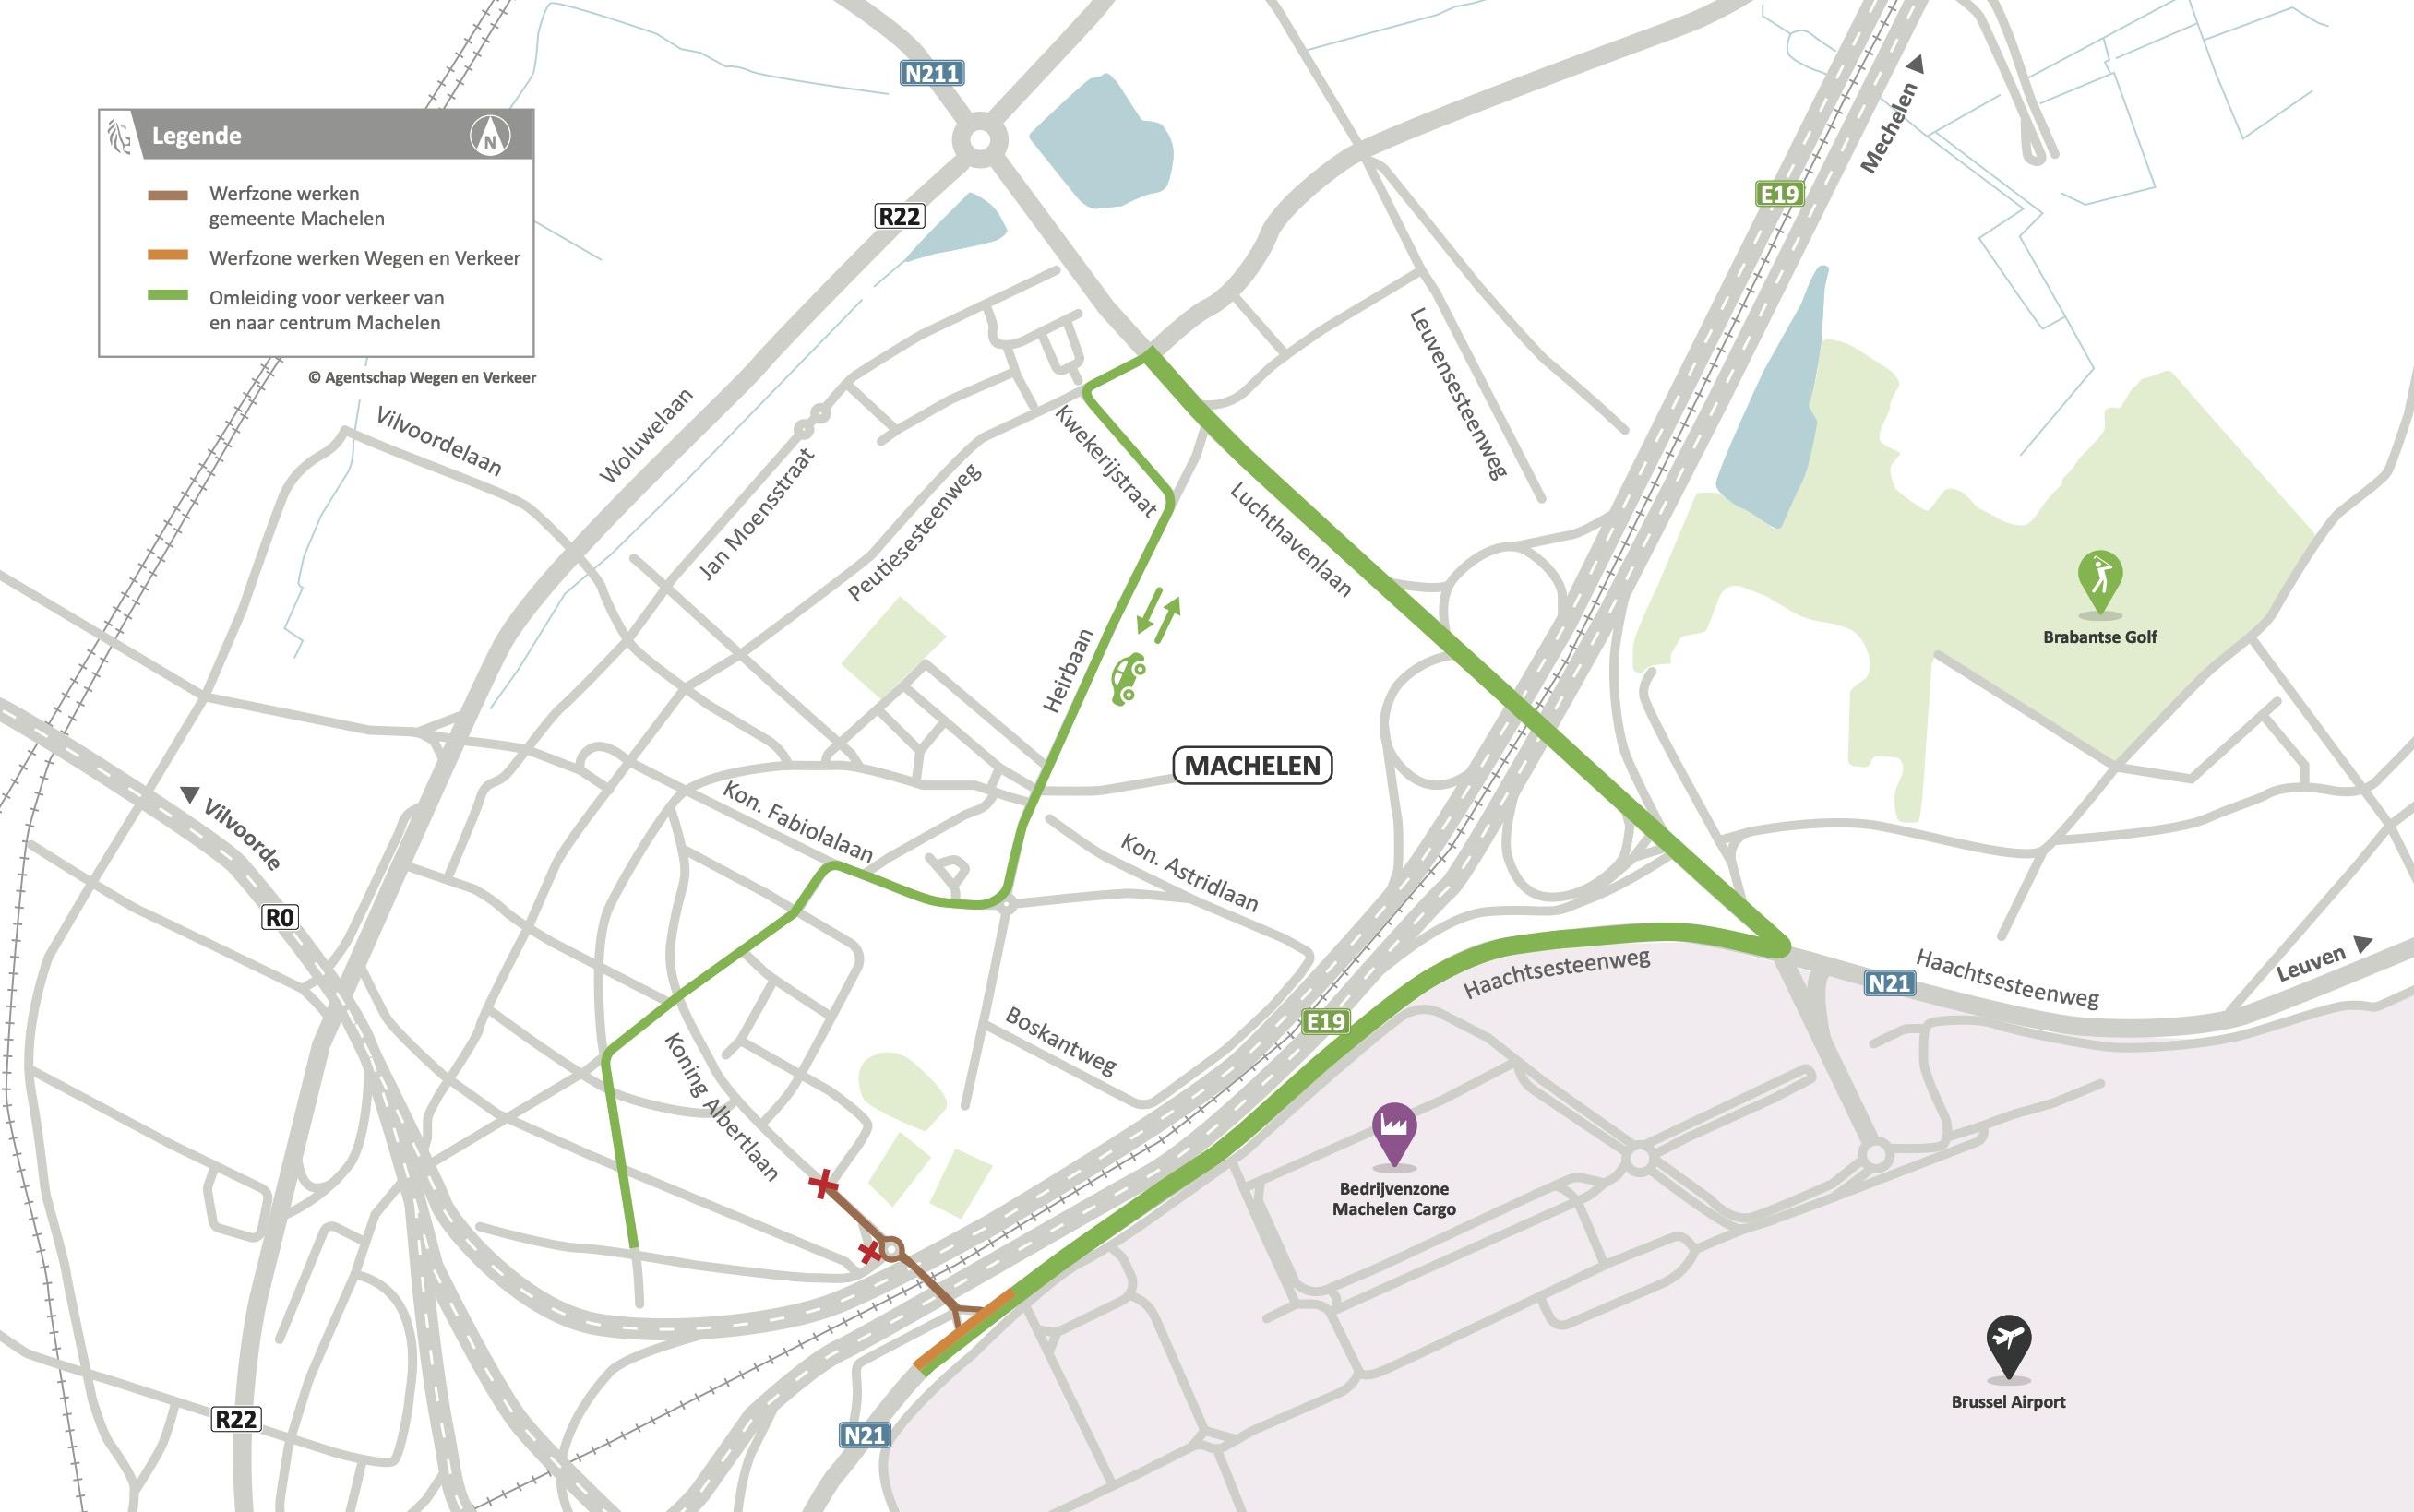 N21 Omleidingskaart Machelen bij tweede fase: bereikbaarheid Haachtsesteenweg tijdens afsluiting Lindenplein door twee werven